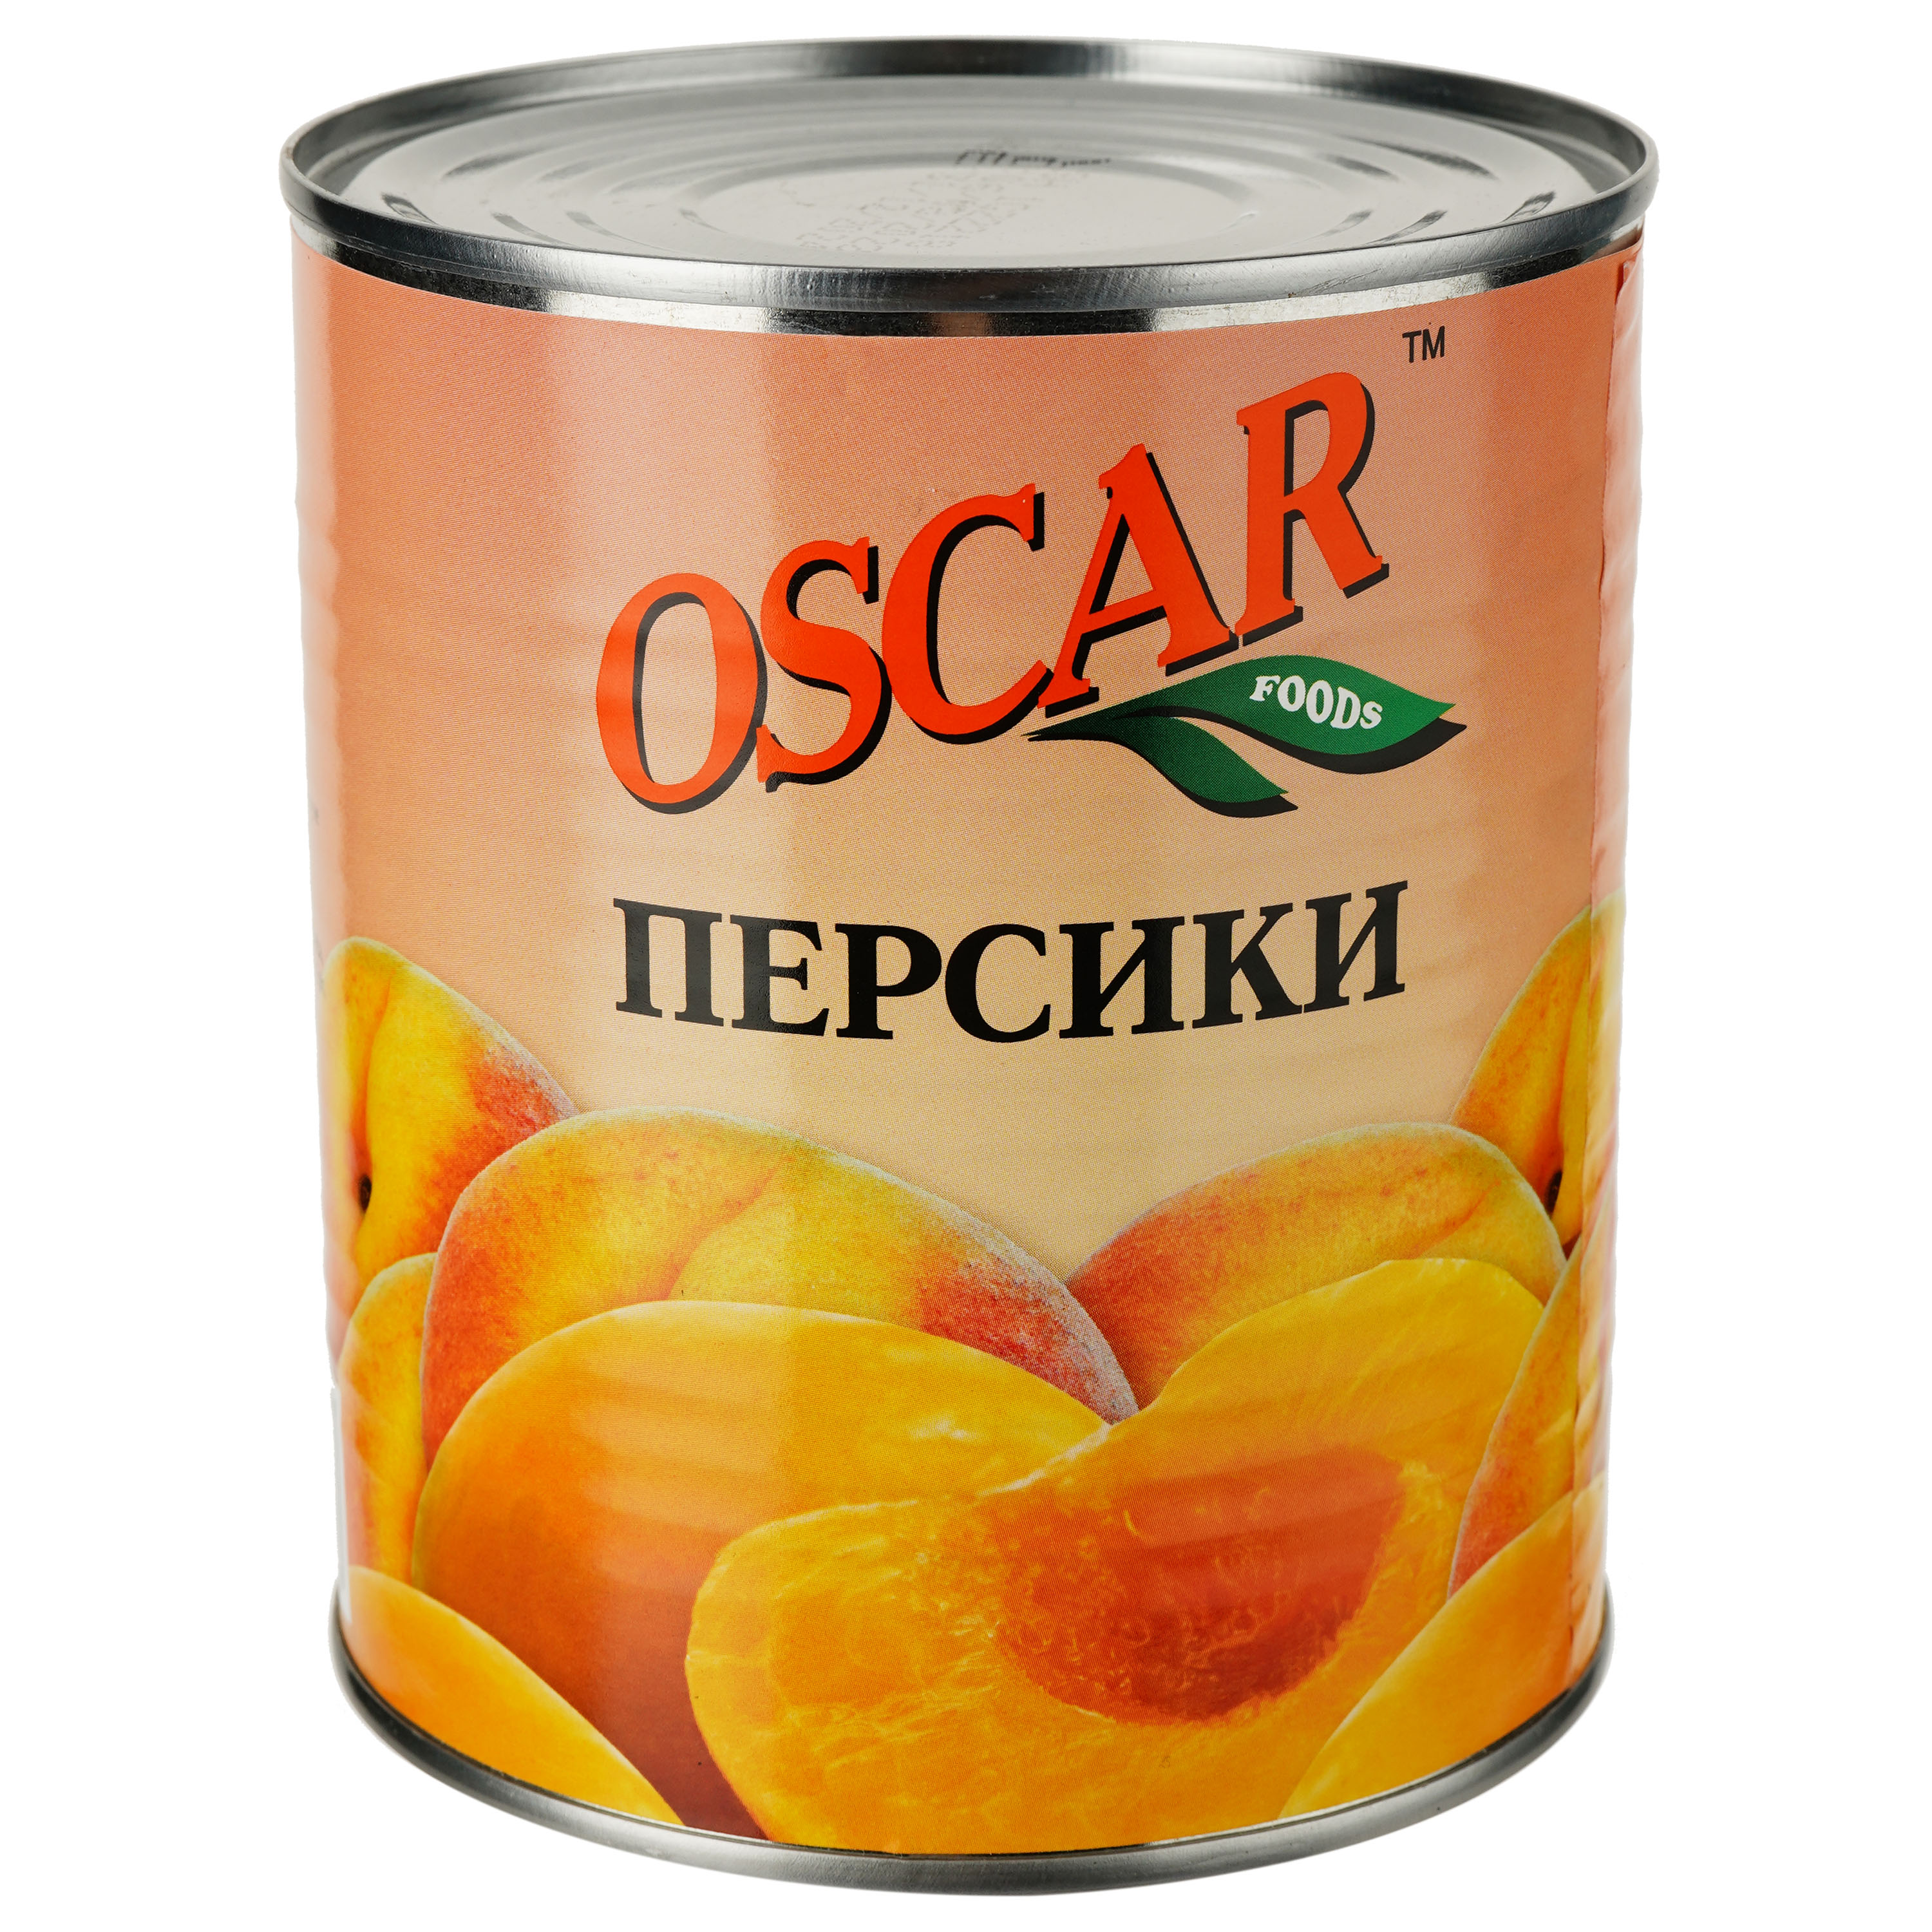 Персики Oscar половинками, 850 мл (232377) - фото 1